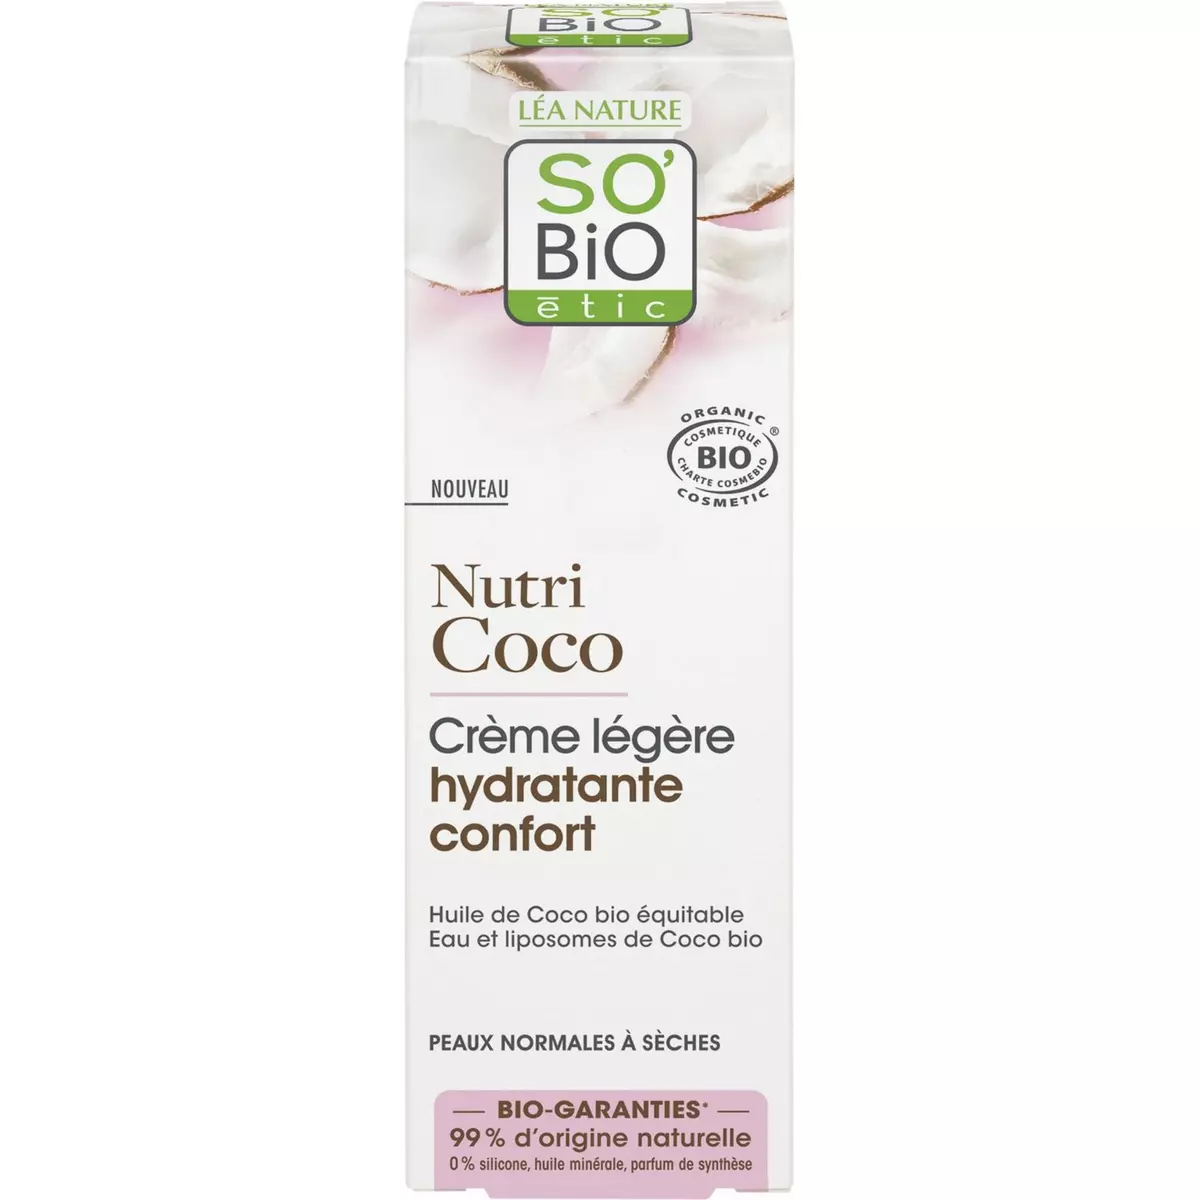 SO BIO ETIC Crème légère hydratante confort à l'huile de coco bio peaux normales à sèches 50ml